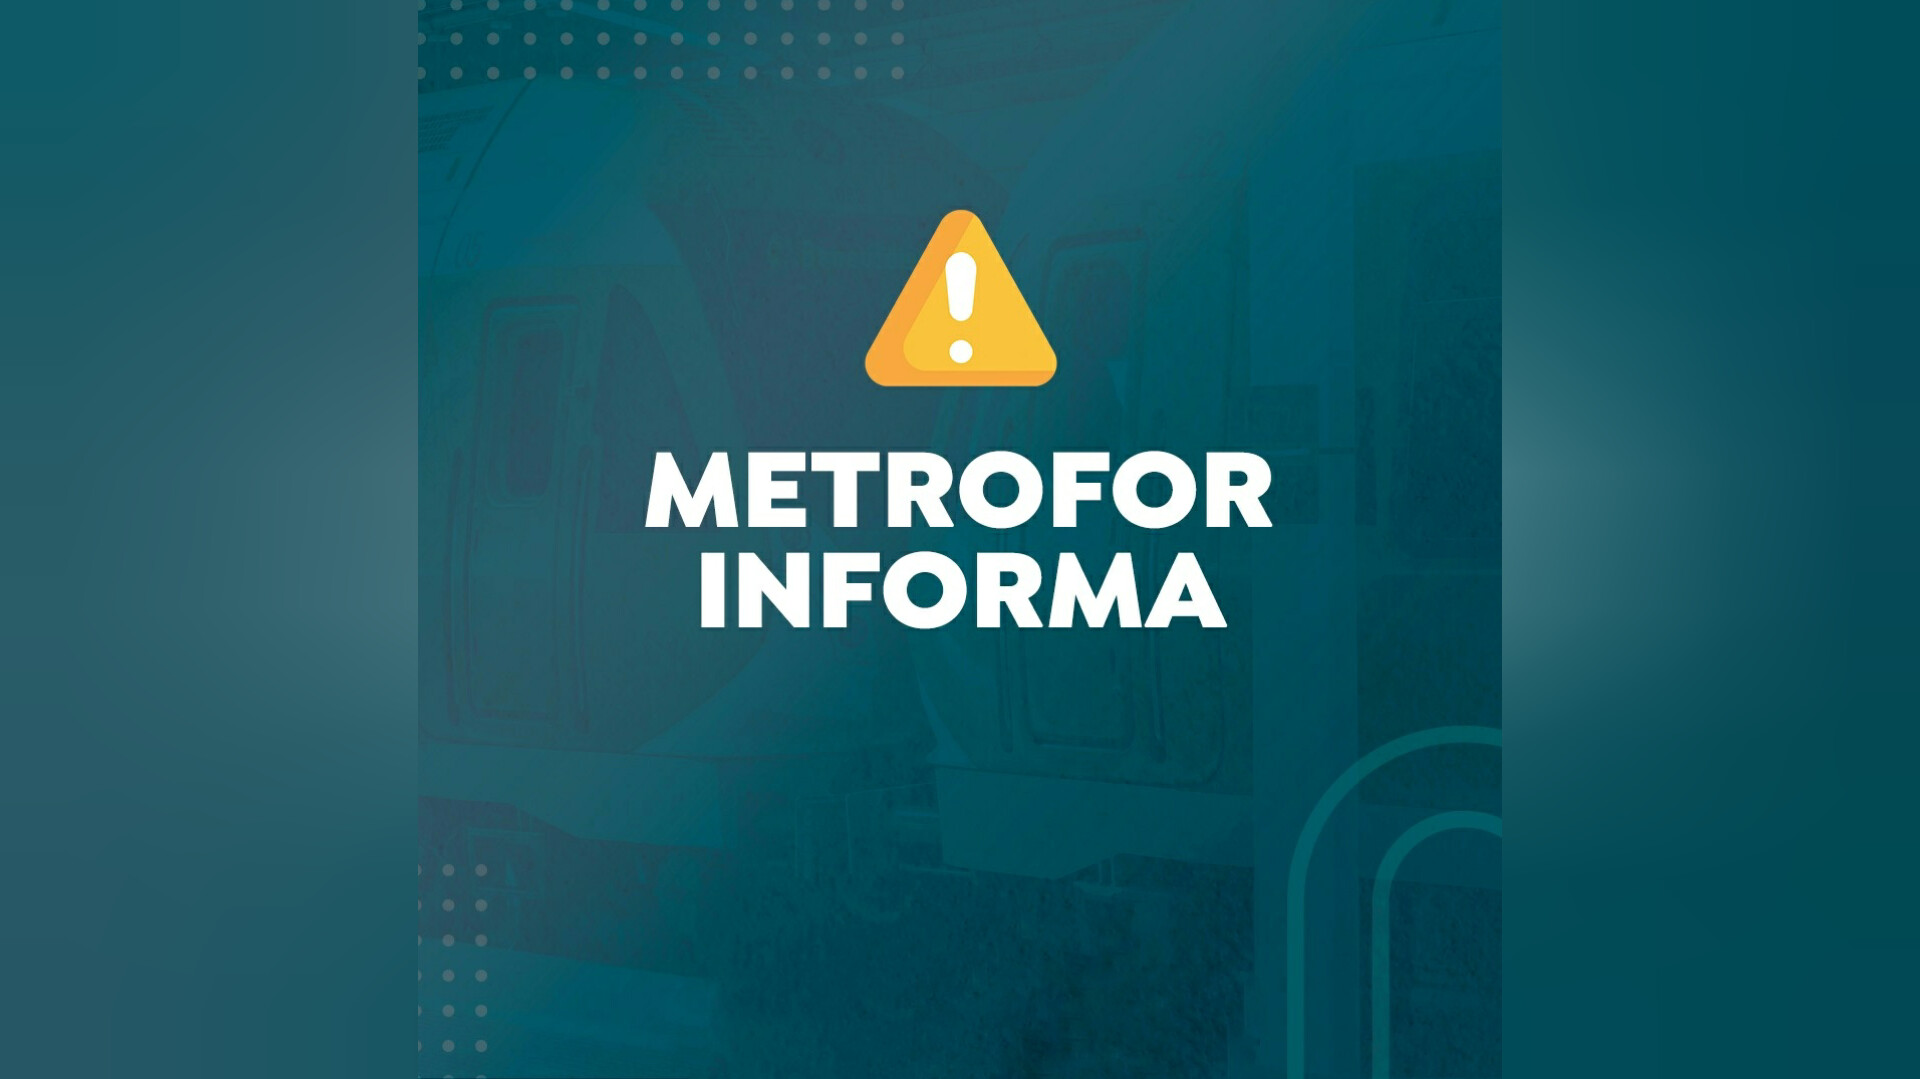 Linhas Nordeste e VLT do Cariri terão suspensão da operação entre sexta e sábado. Veja aqui os detalhes